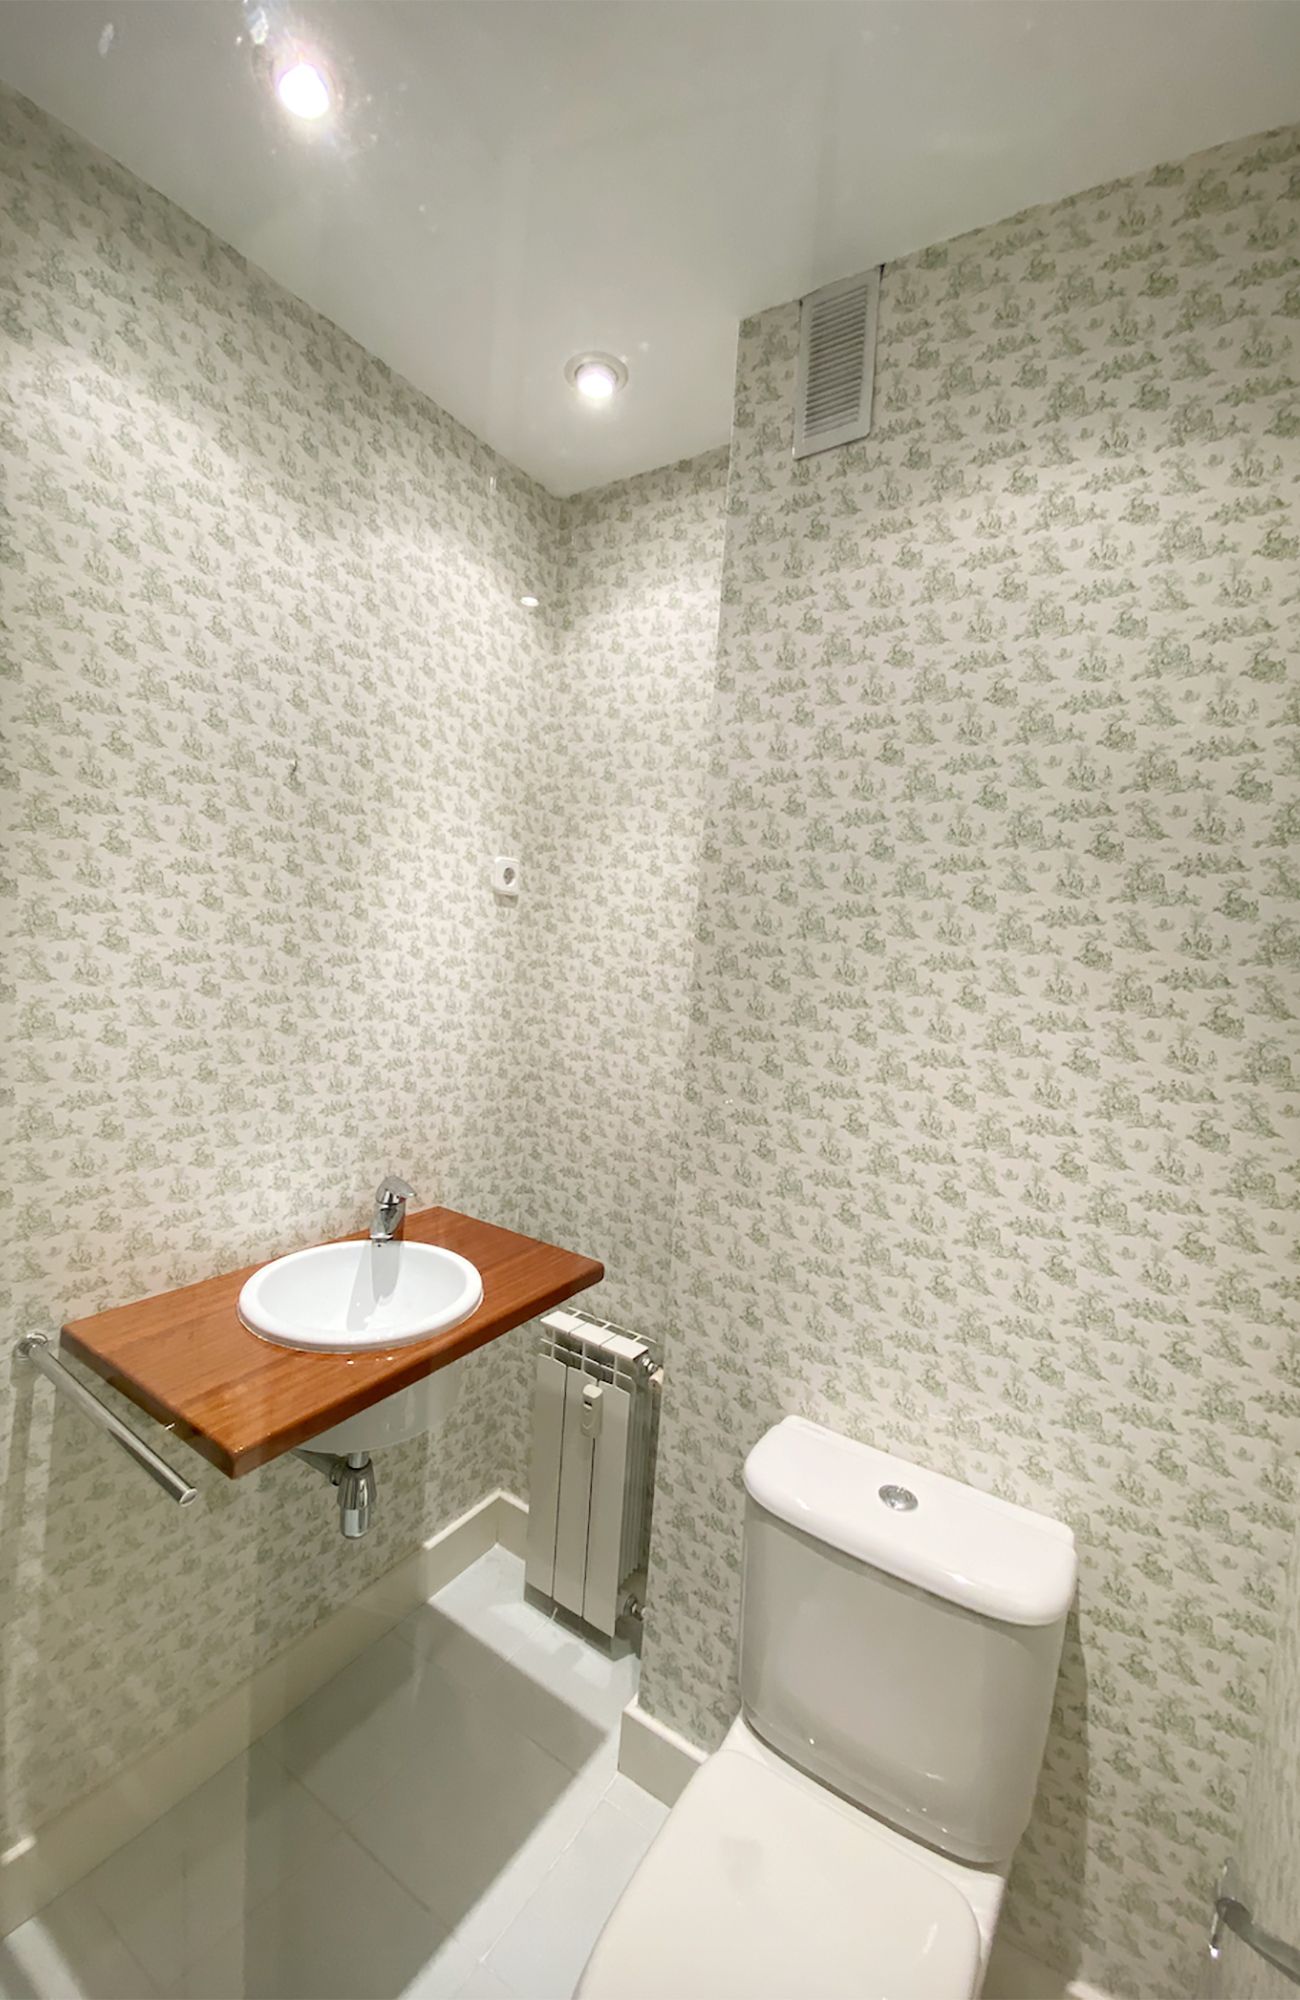 2 Cuartos de baños reformados sin obra con papel pintado